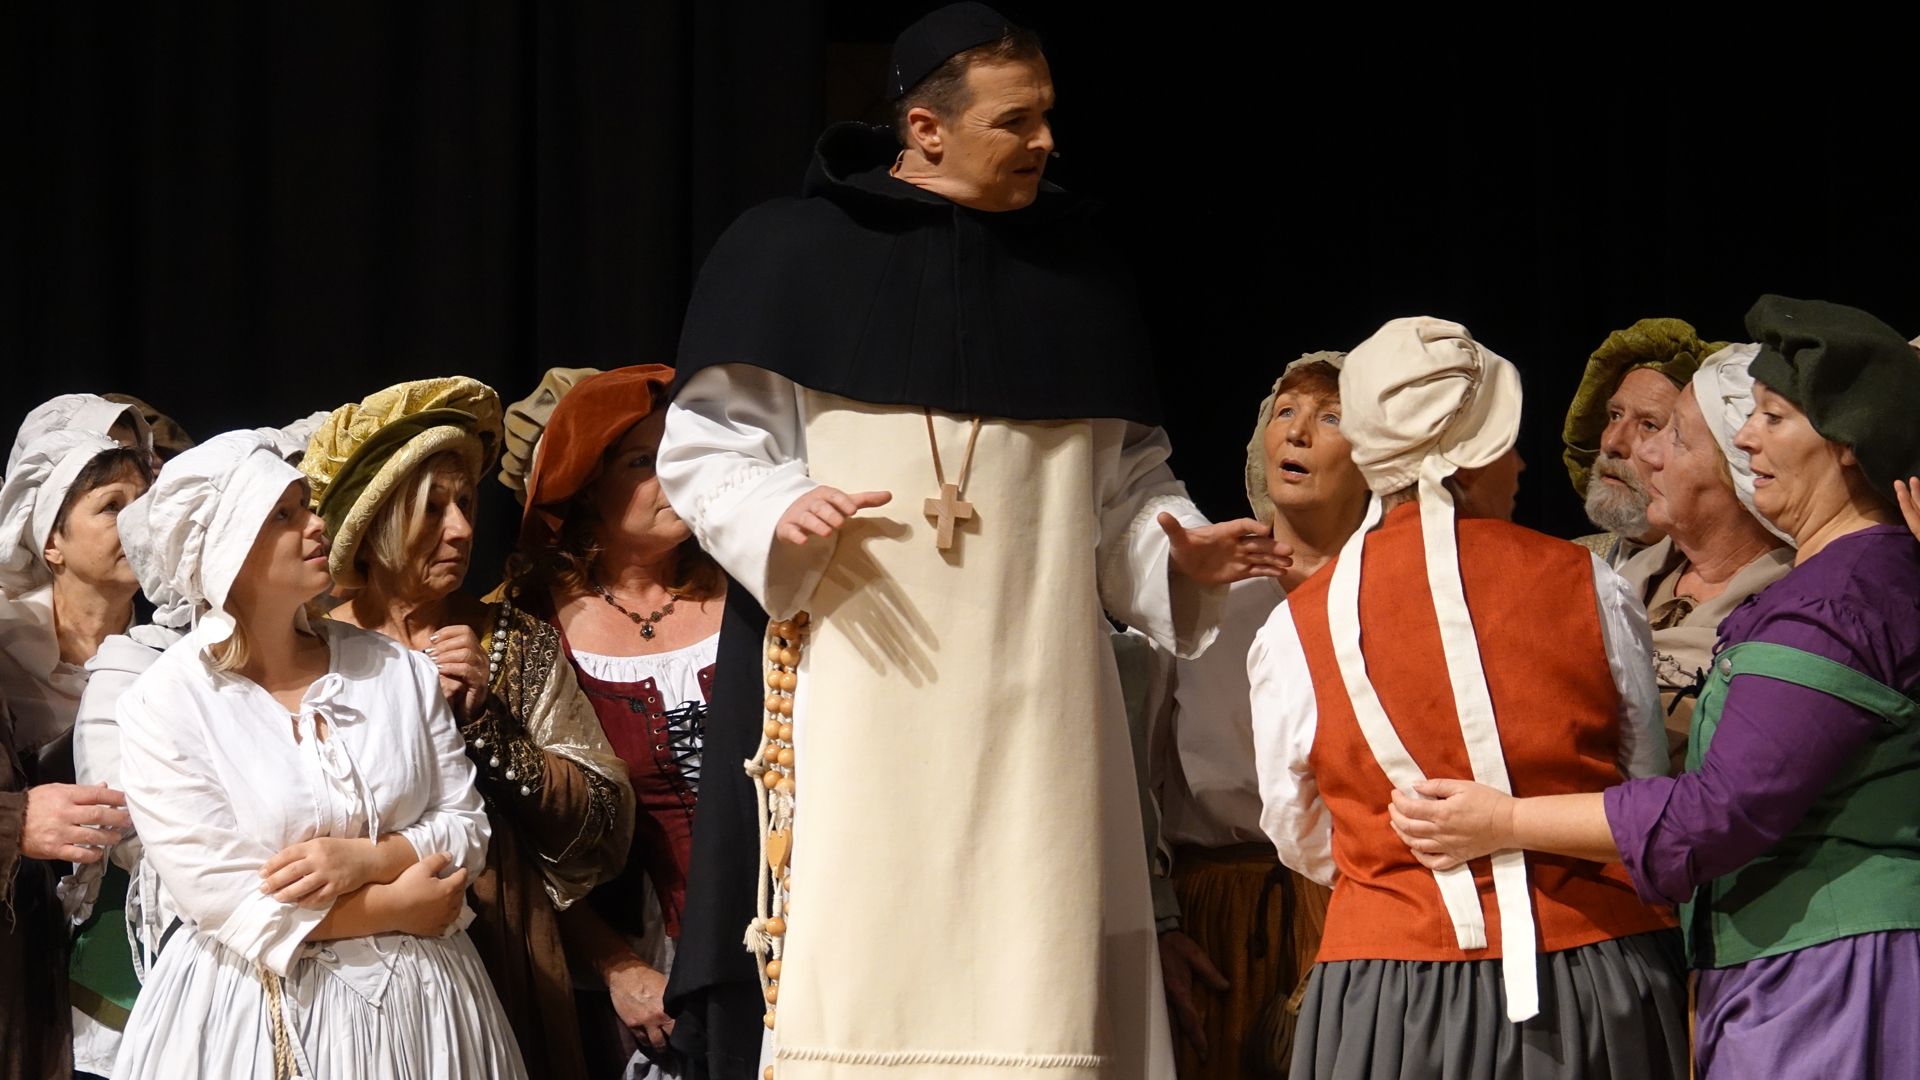 Michael Schaumann hat als Dominikanermönch Johann Tetzel, der den Ablassverkauf anheizt, nur eine große Szene. Die bleibt aber durch ihre Intensität auch nach dem Theaterstück noch in Erinnerung.